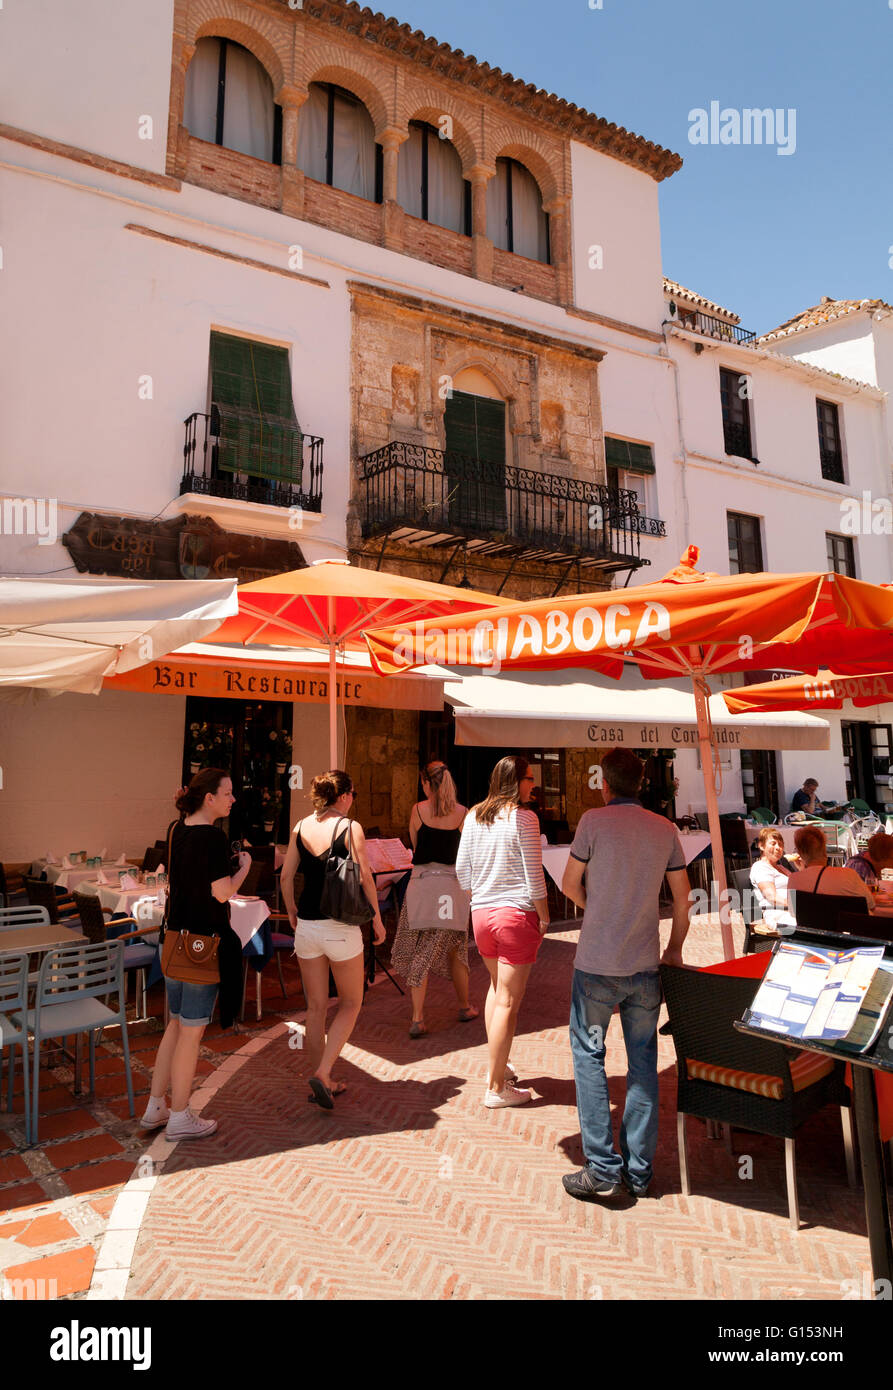 Gente que entra a una cafetería, Plaza de los Naranjos ( naranja ), Plaza de la ciudad vieja de Marbella, Costa del Sol, Andalucía, España Foto de stock